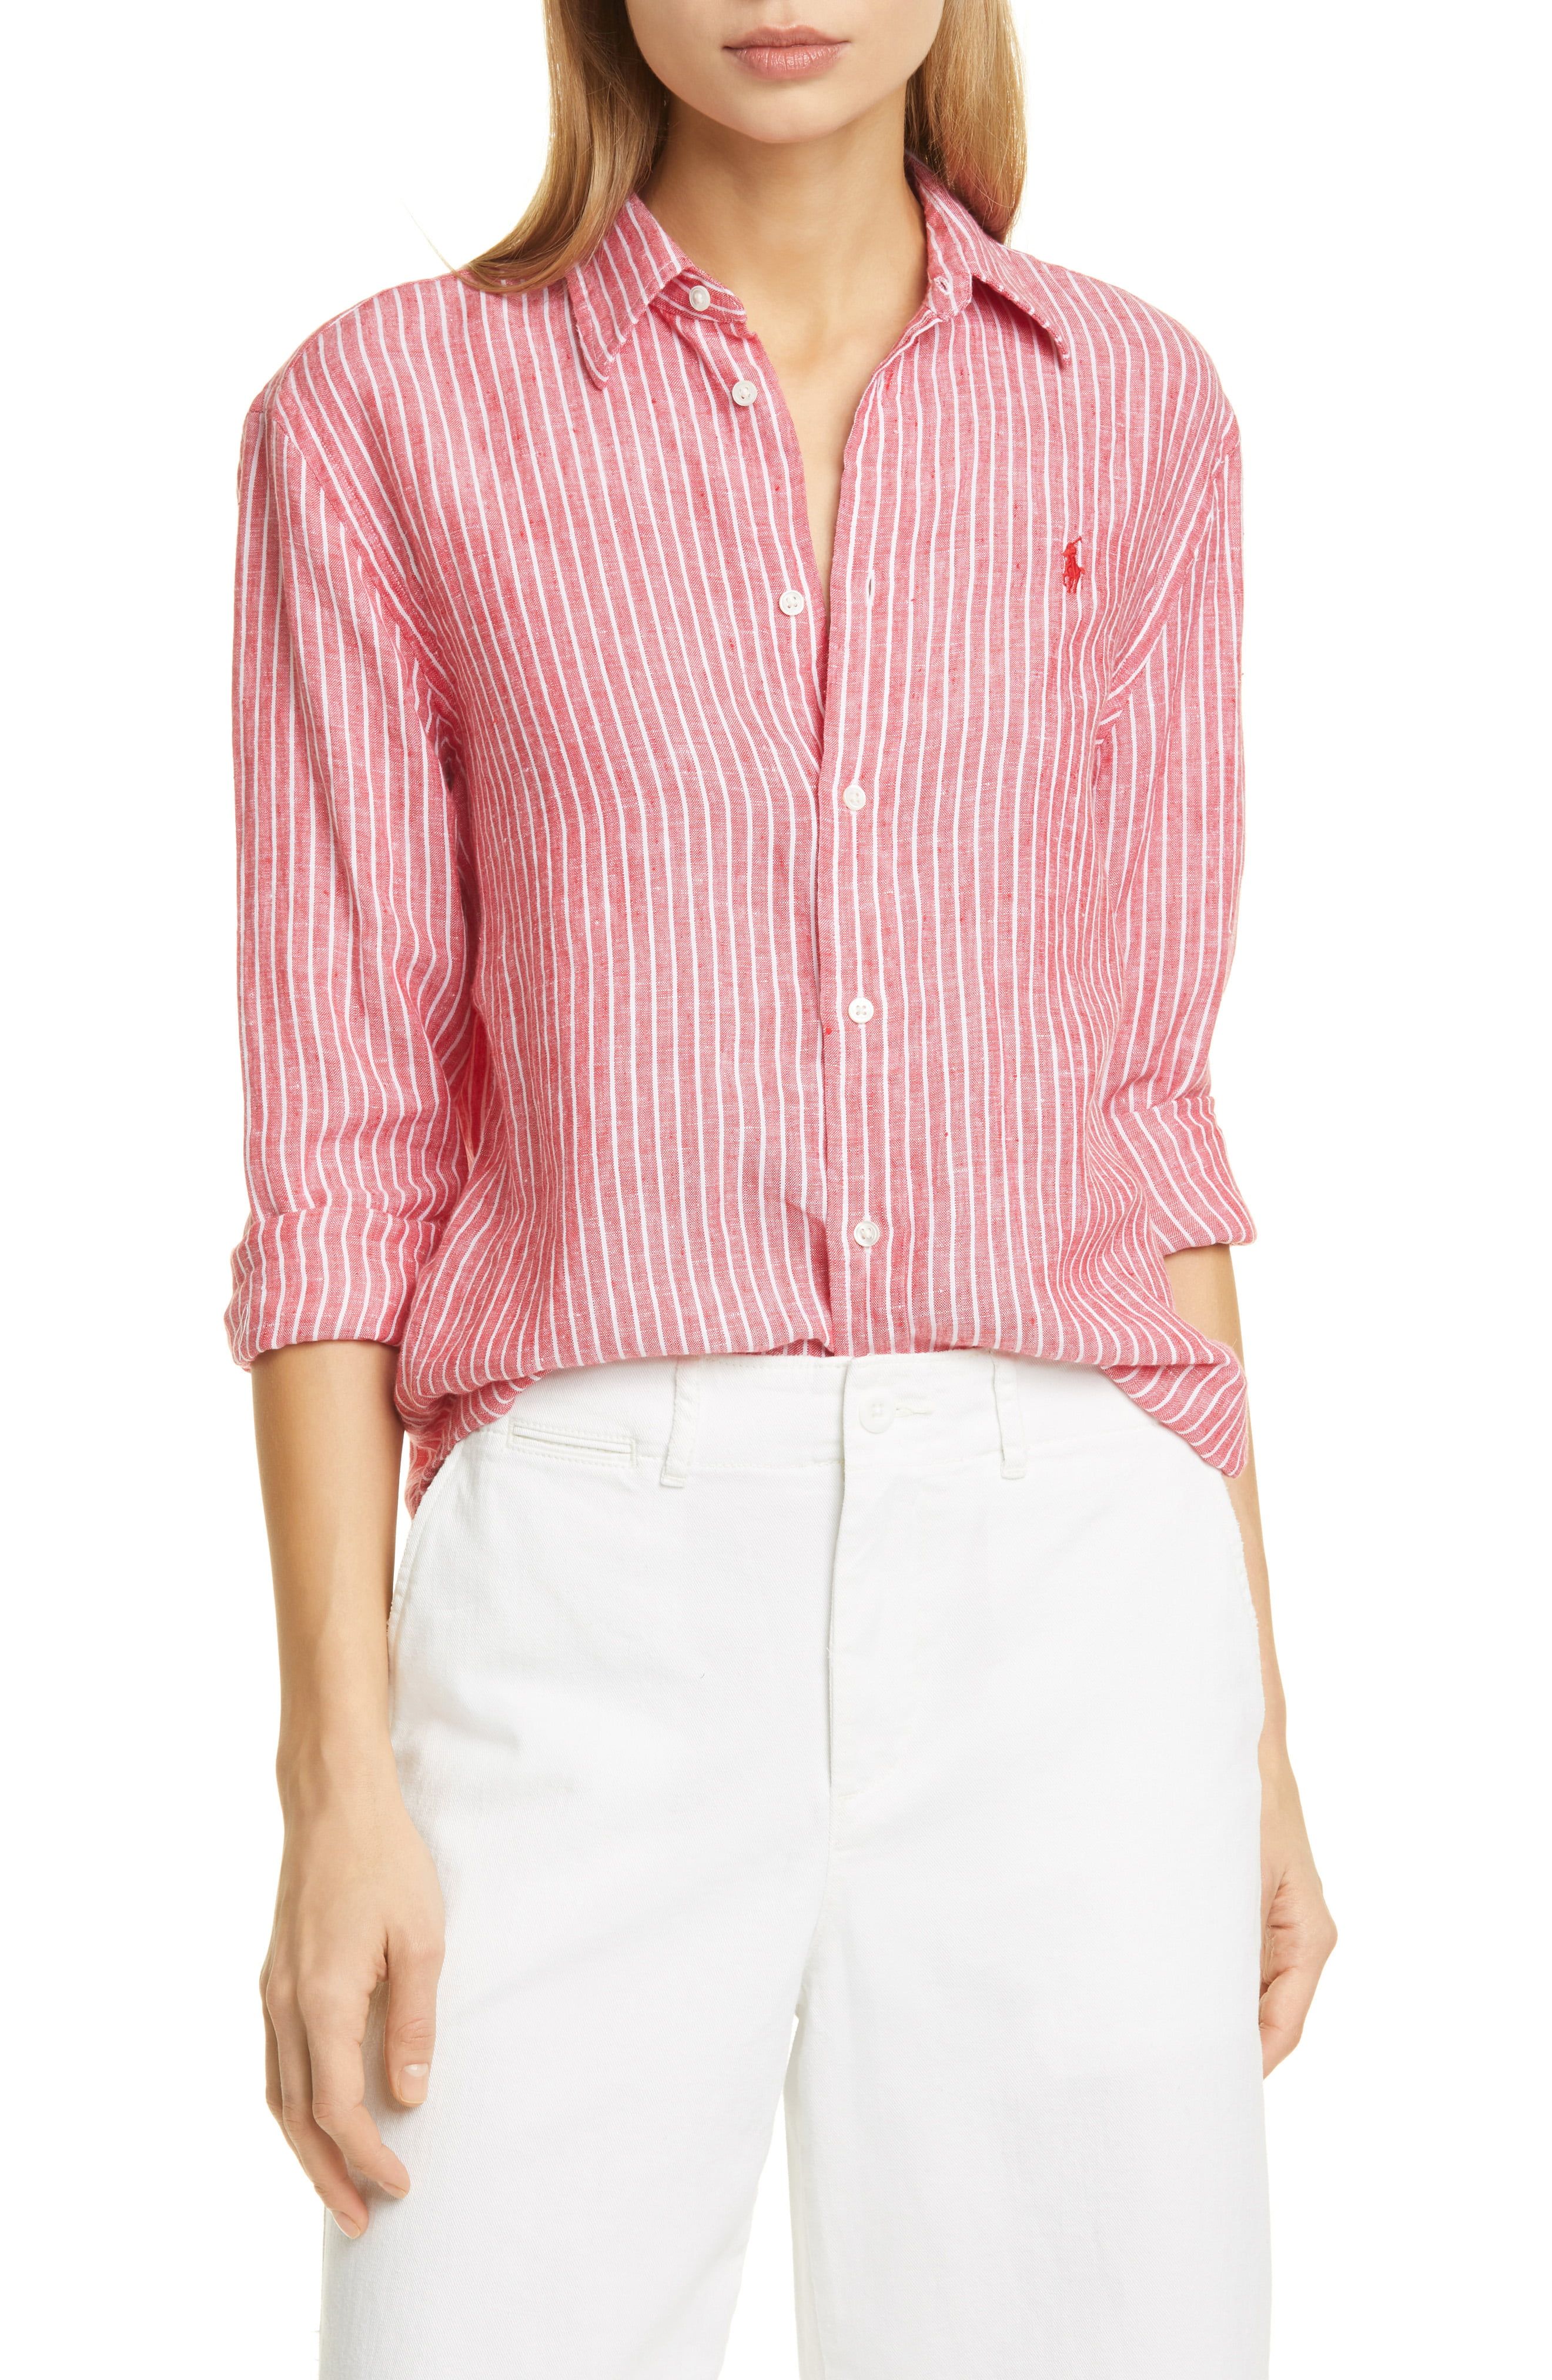 pink button down shirt women's